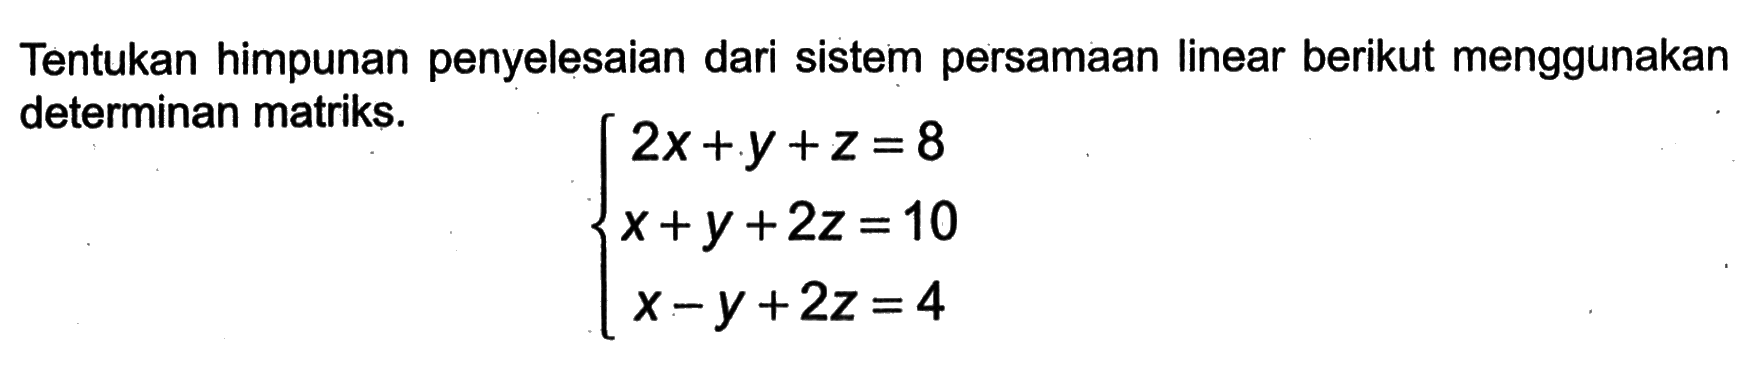 Tentukan himpunan penyelesaian dari sistem persamaan linear berikut menggunakan determinan matriks. 2x+y+z=8 x+y+2z=10 x-y+2z=4